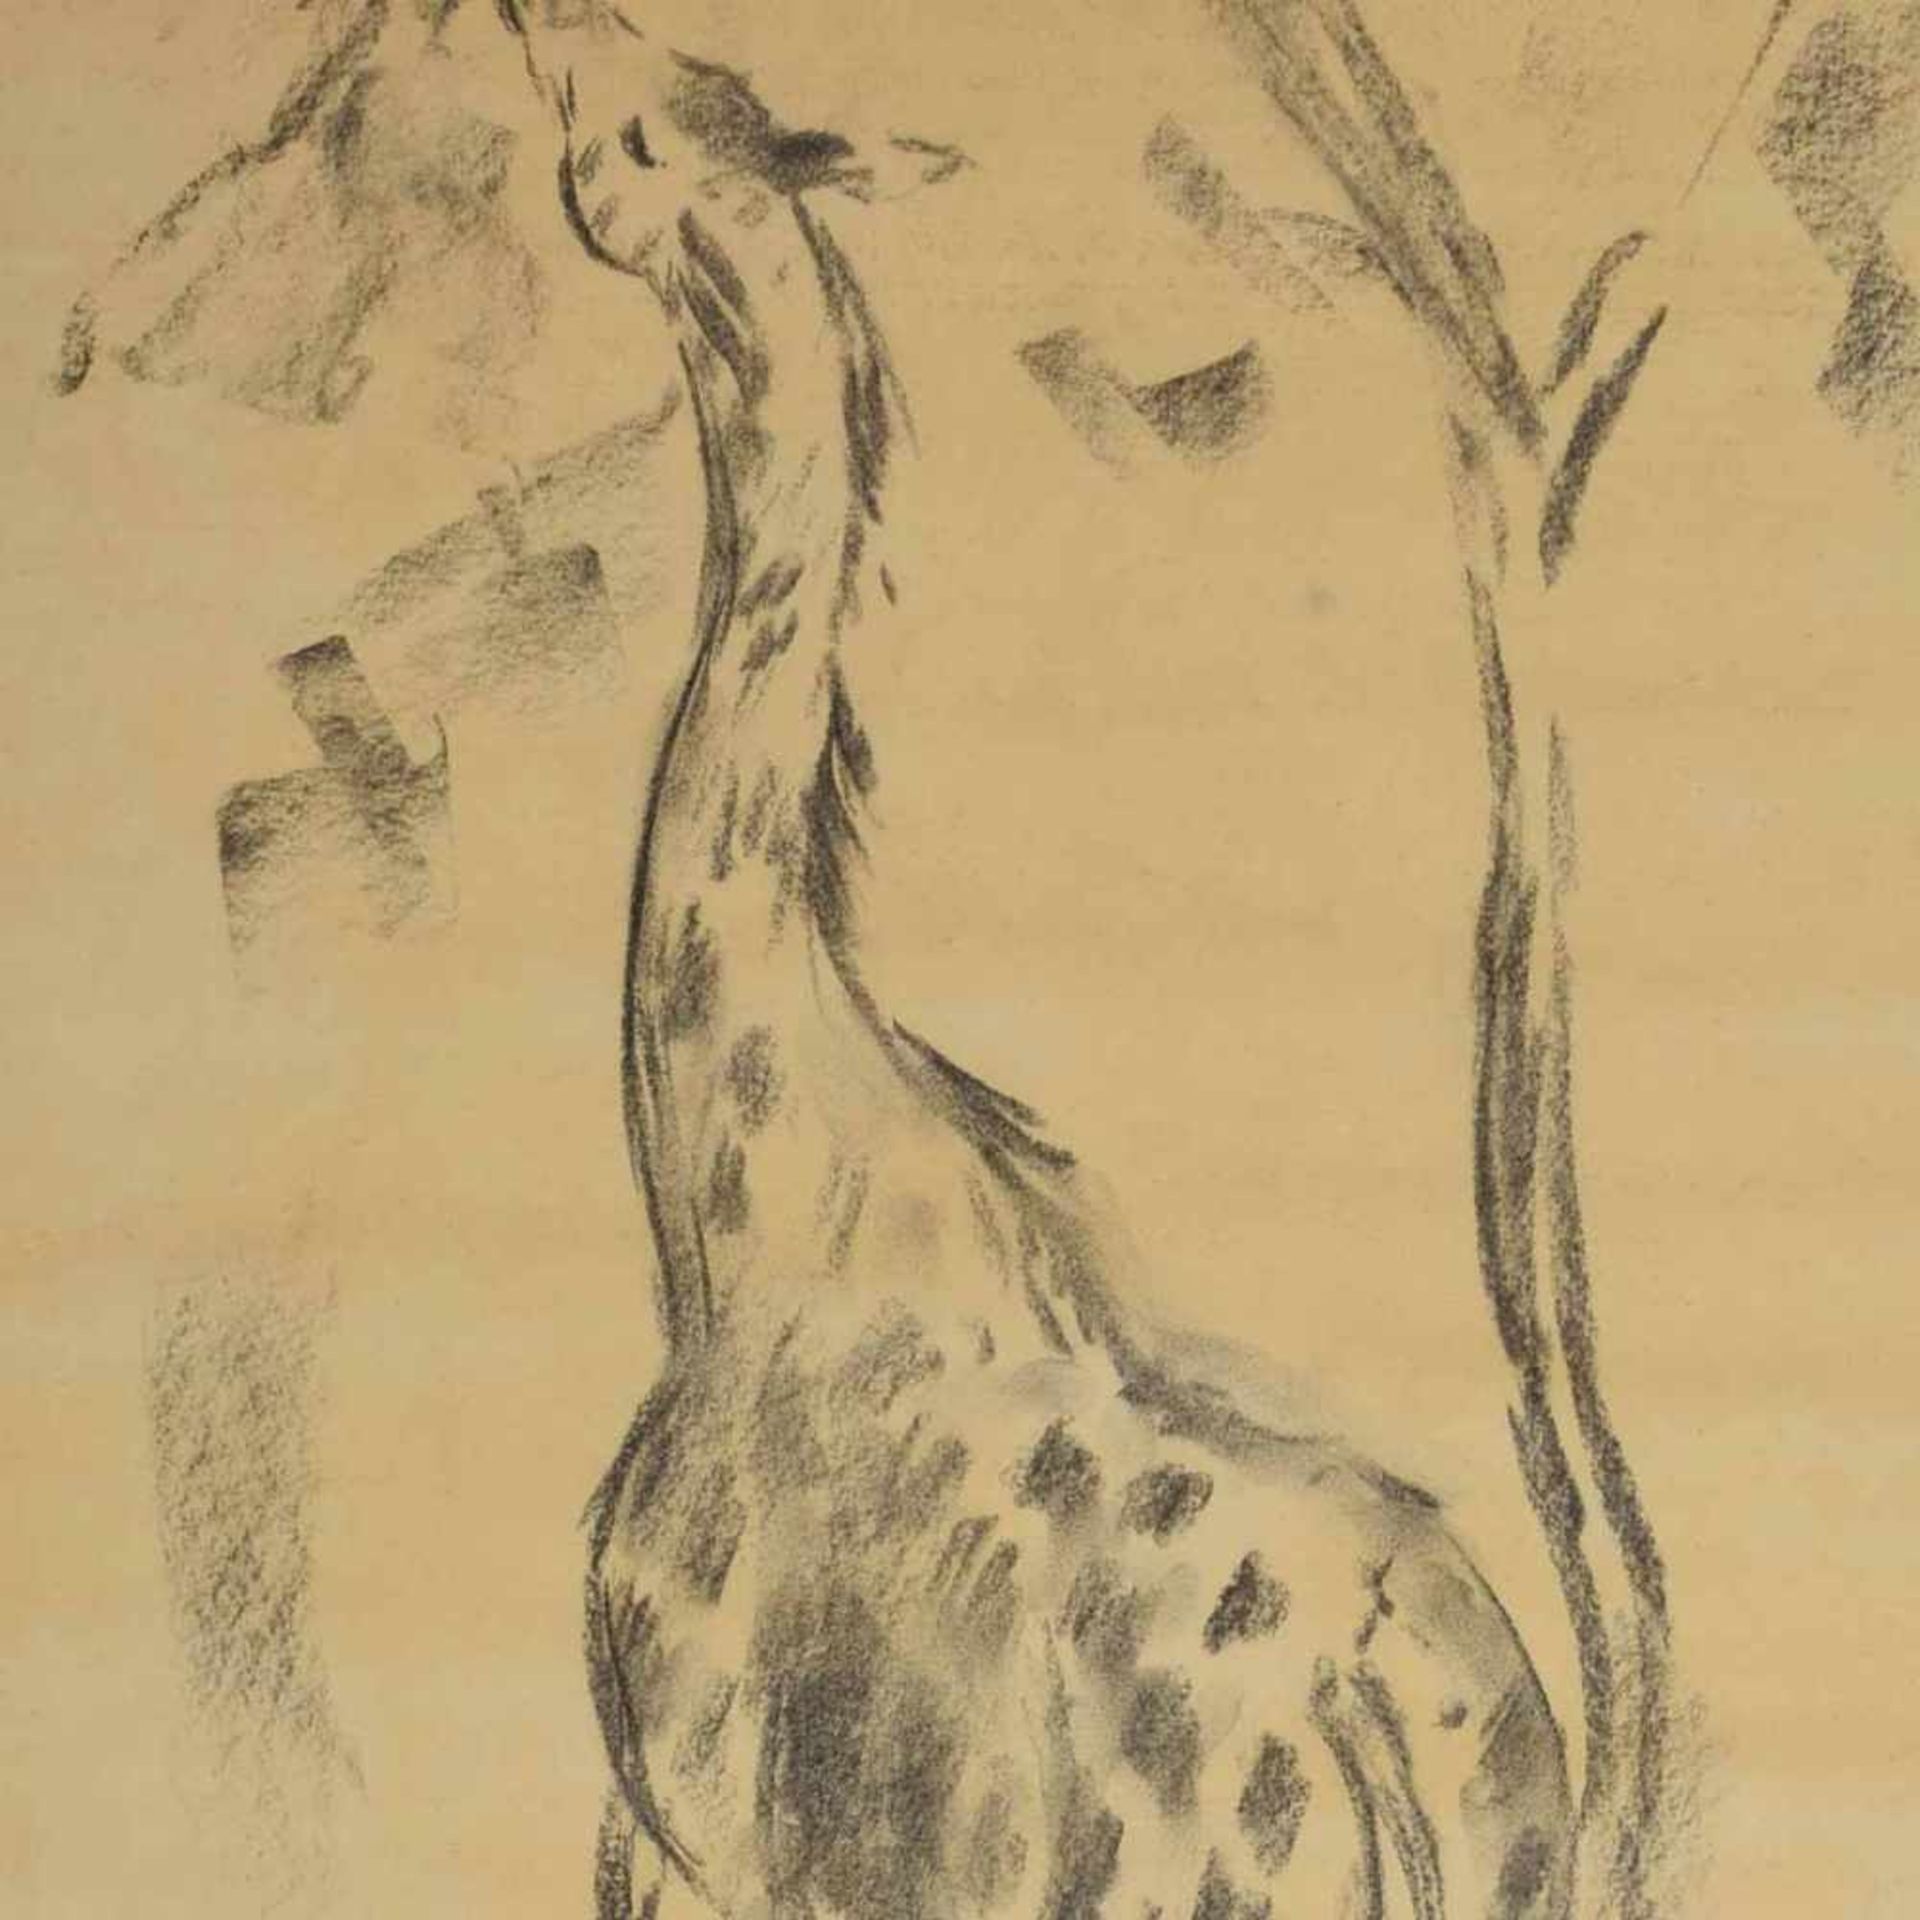 Exotische Tierzeichnung Graphit auf Papier, Giraffe, stehende Darstellung, den Kopf in das Blattwerk